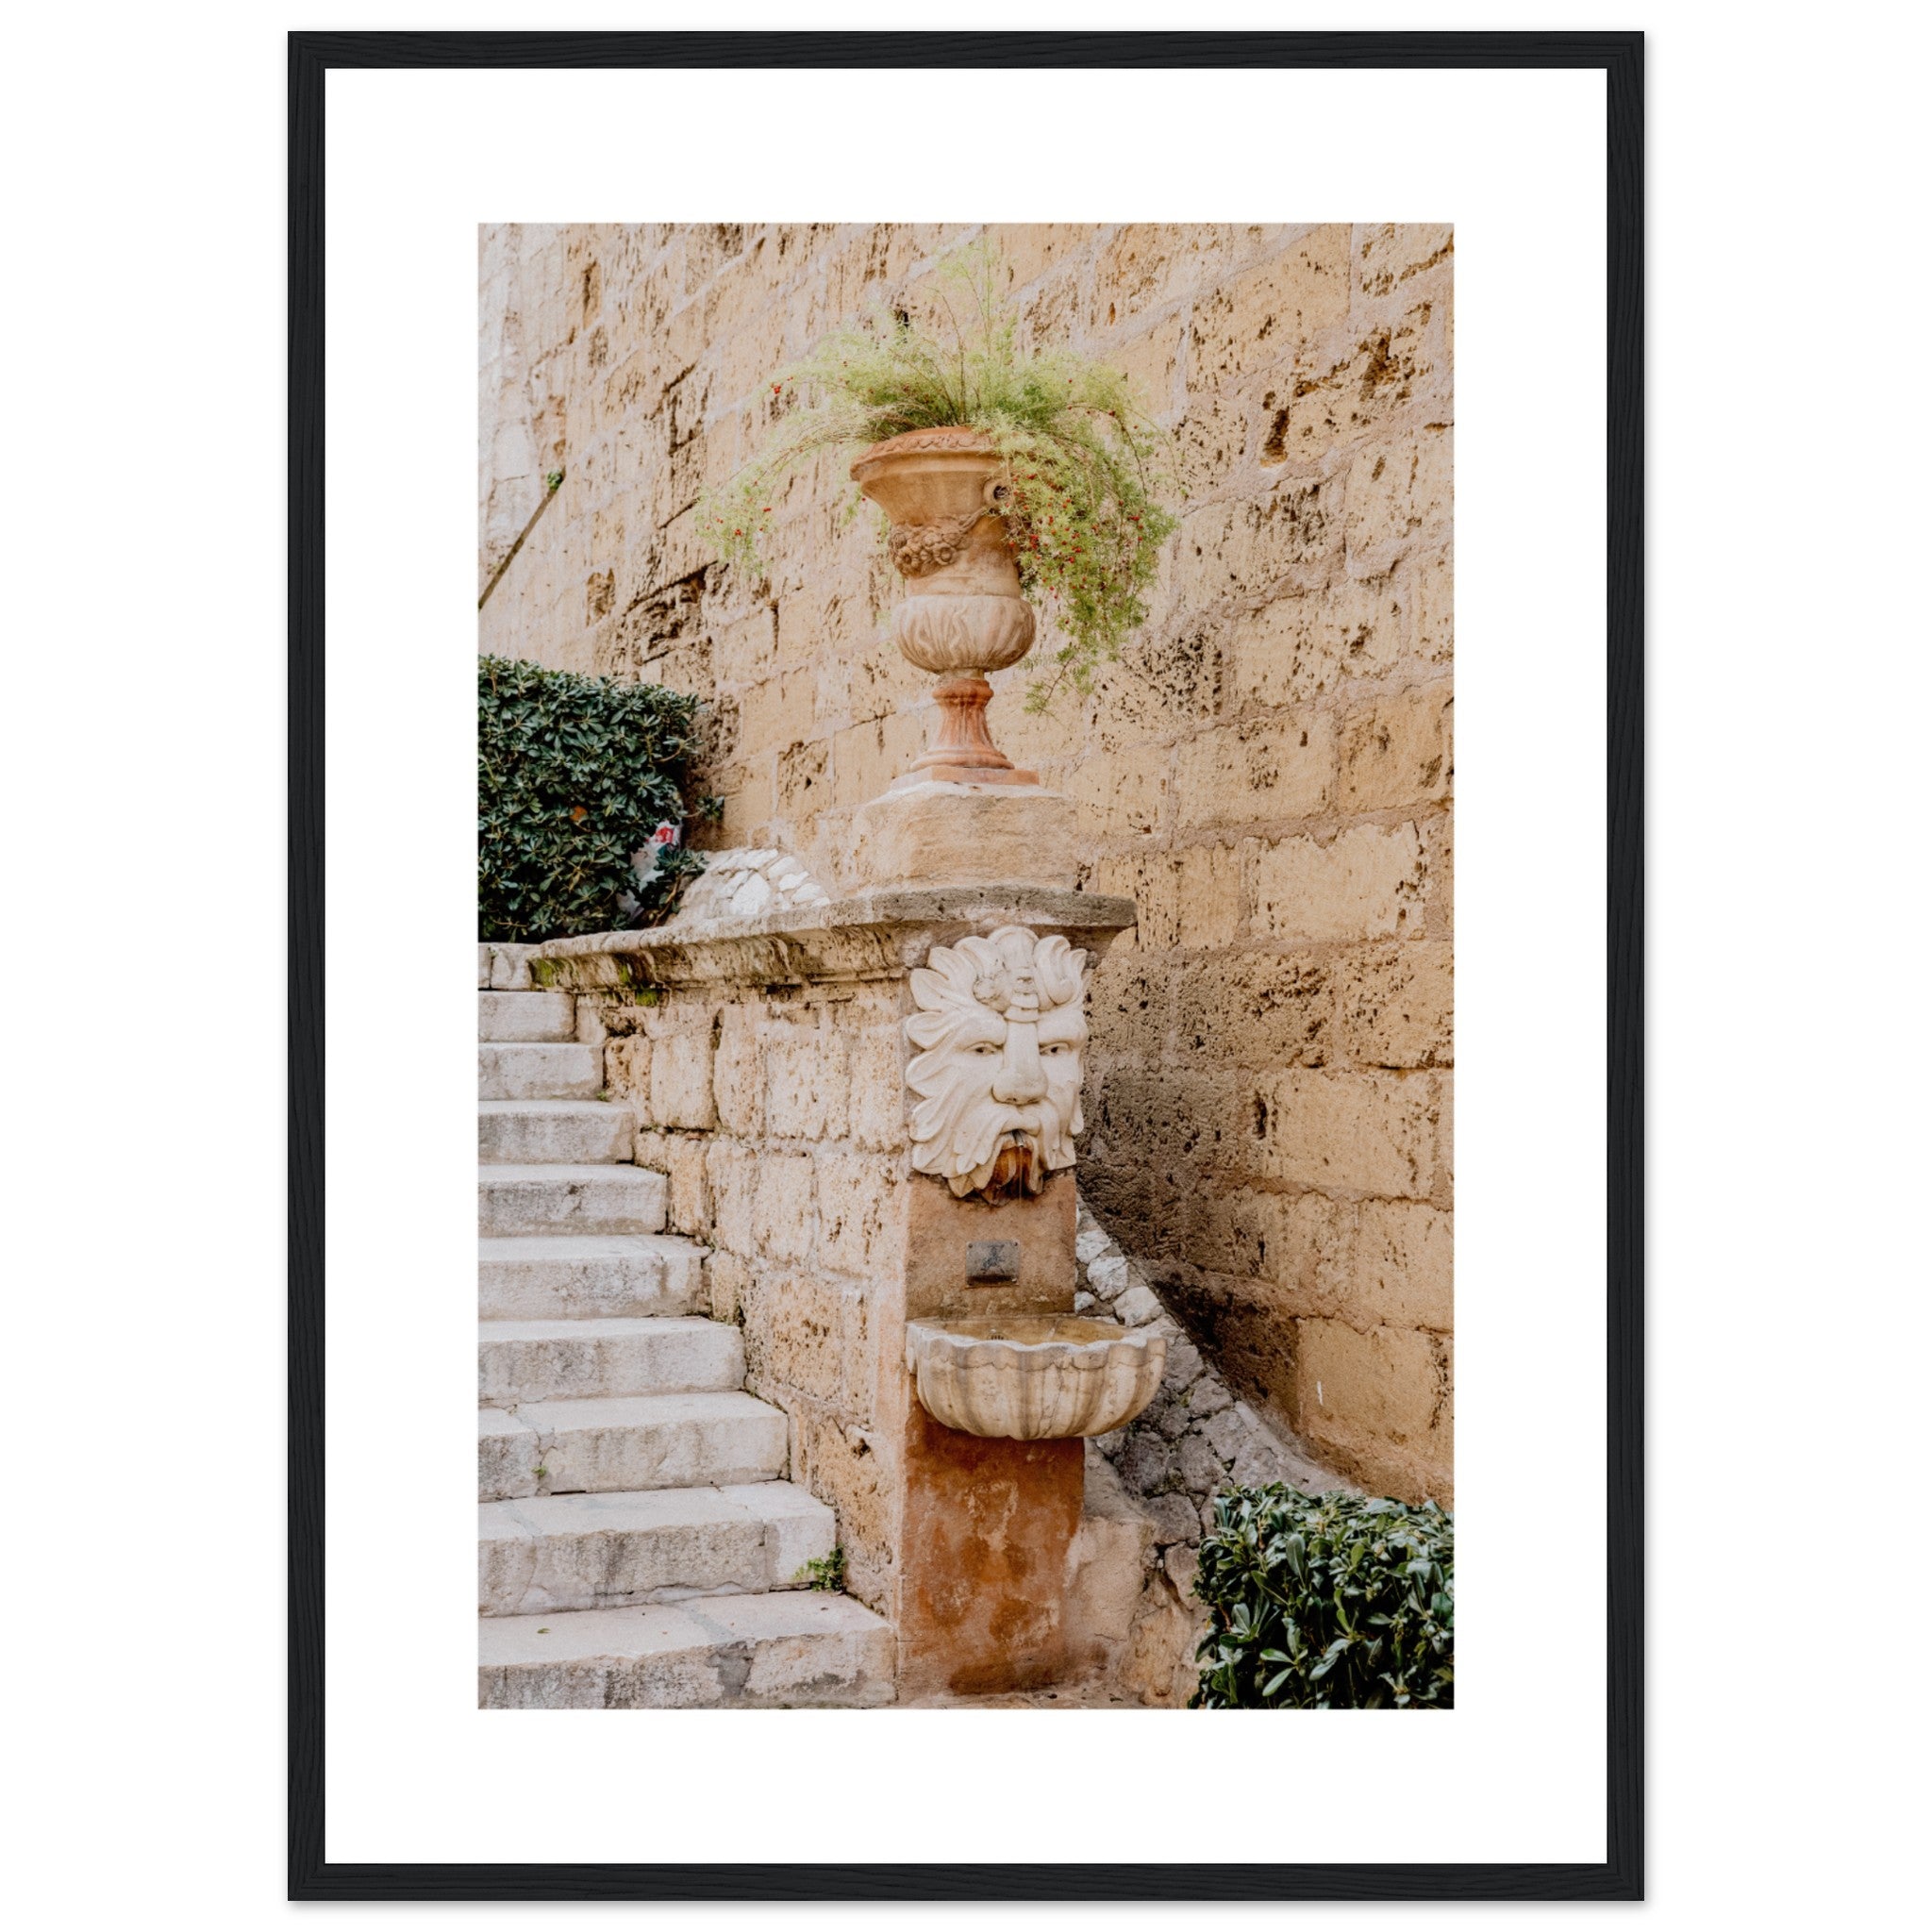 Fountain and Plant on Costa de la Seu Street In Mallorca Poster